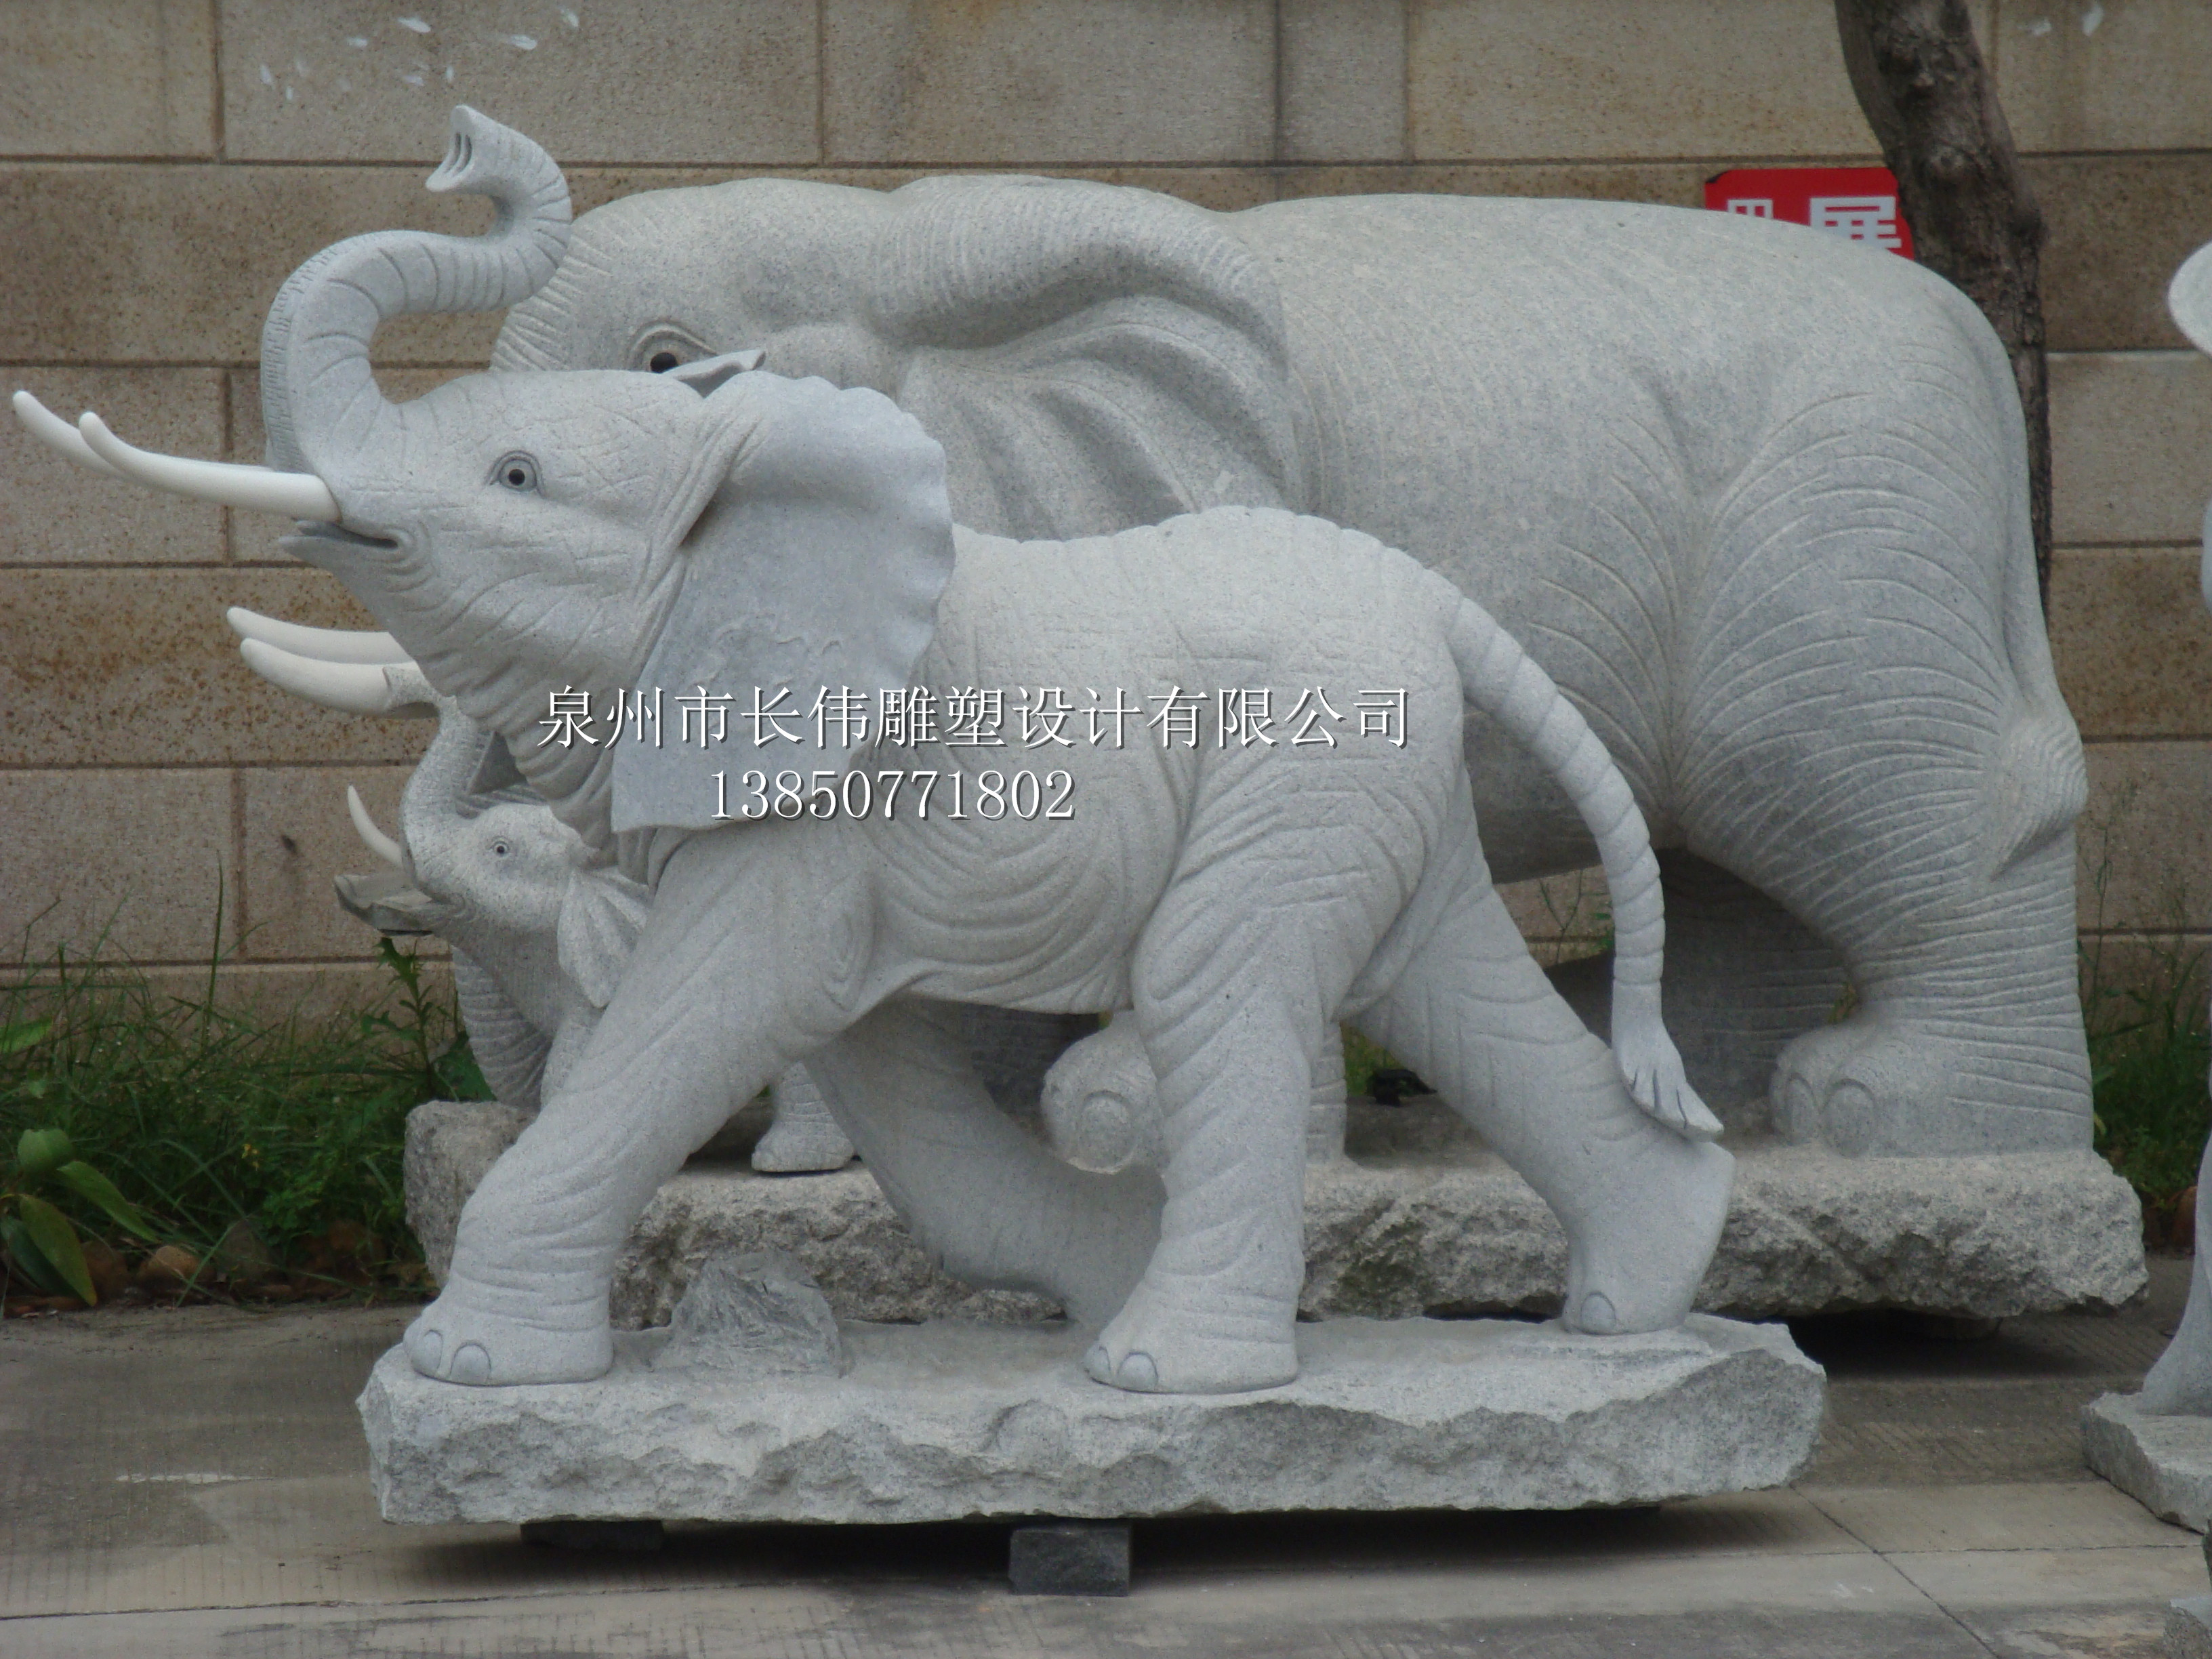 供应用于招财大象的石雕大象生产厂家动物雕塑雕刻批发各规格来图加工定制图片